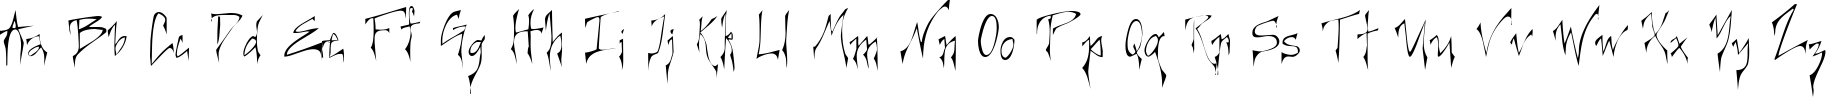 Пример написания английского алфавита шрифтом Creepygirl Light